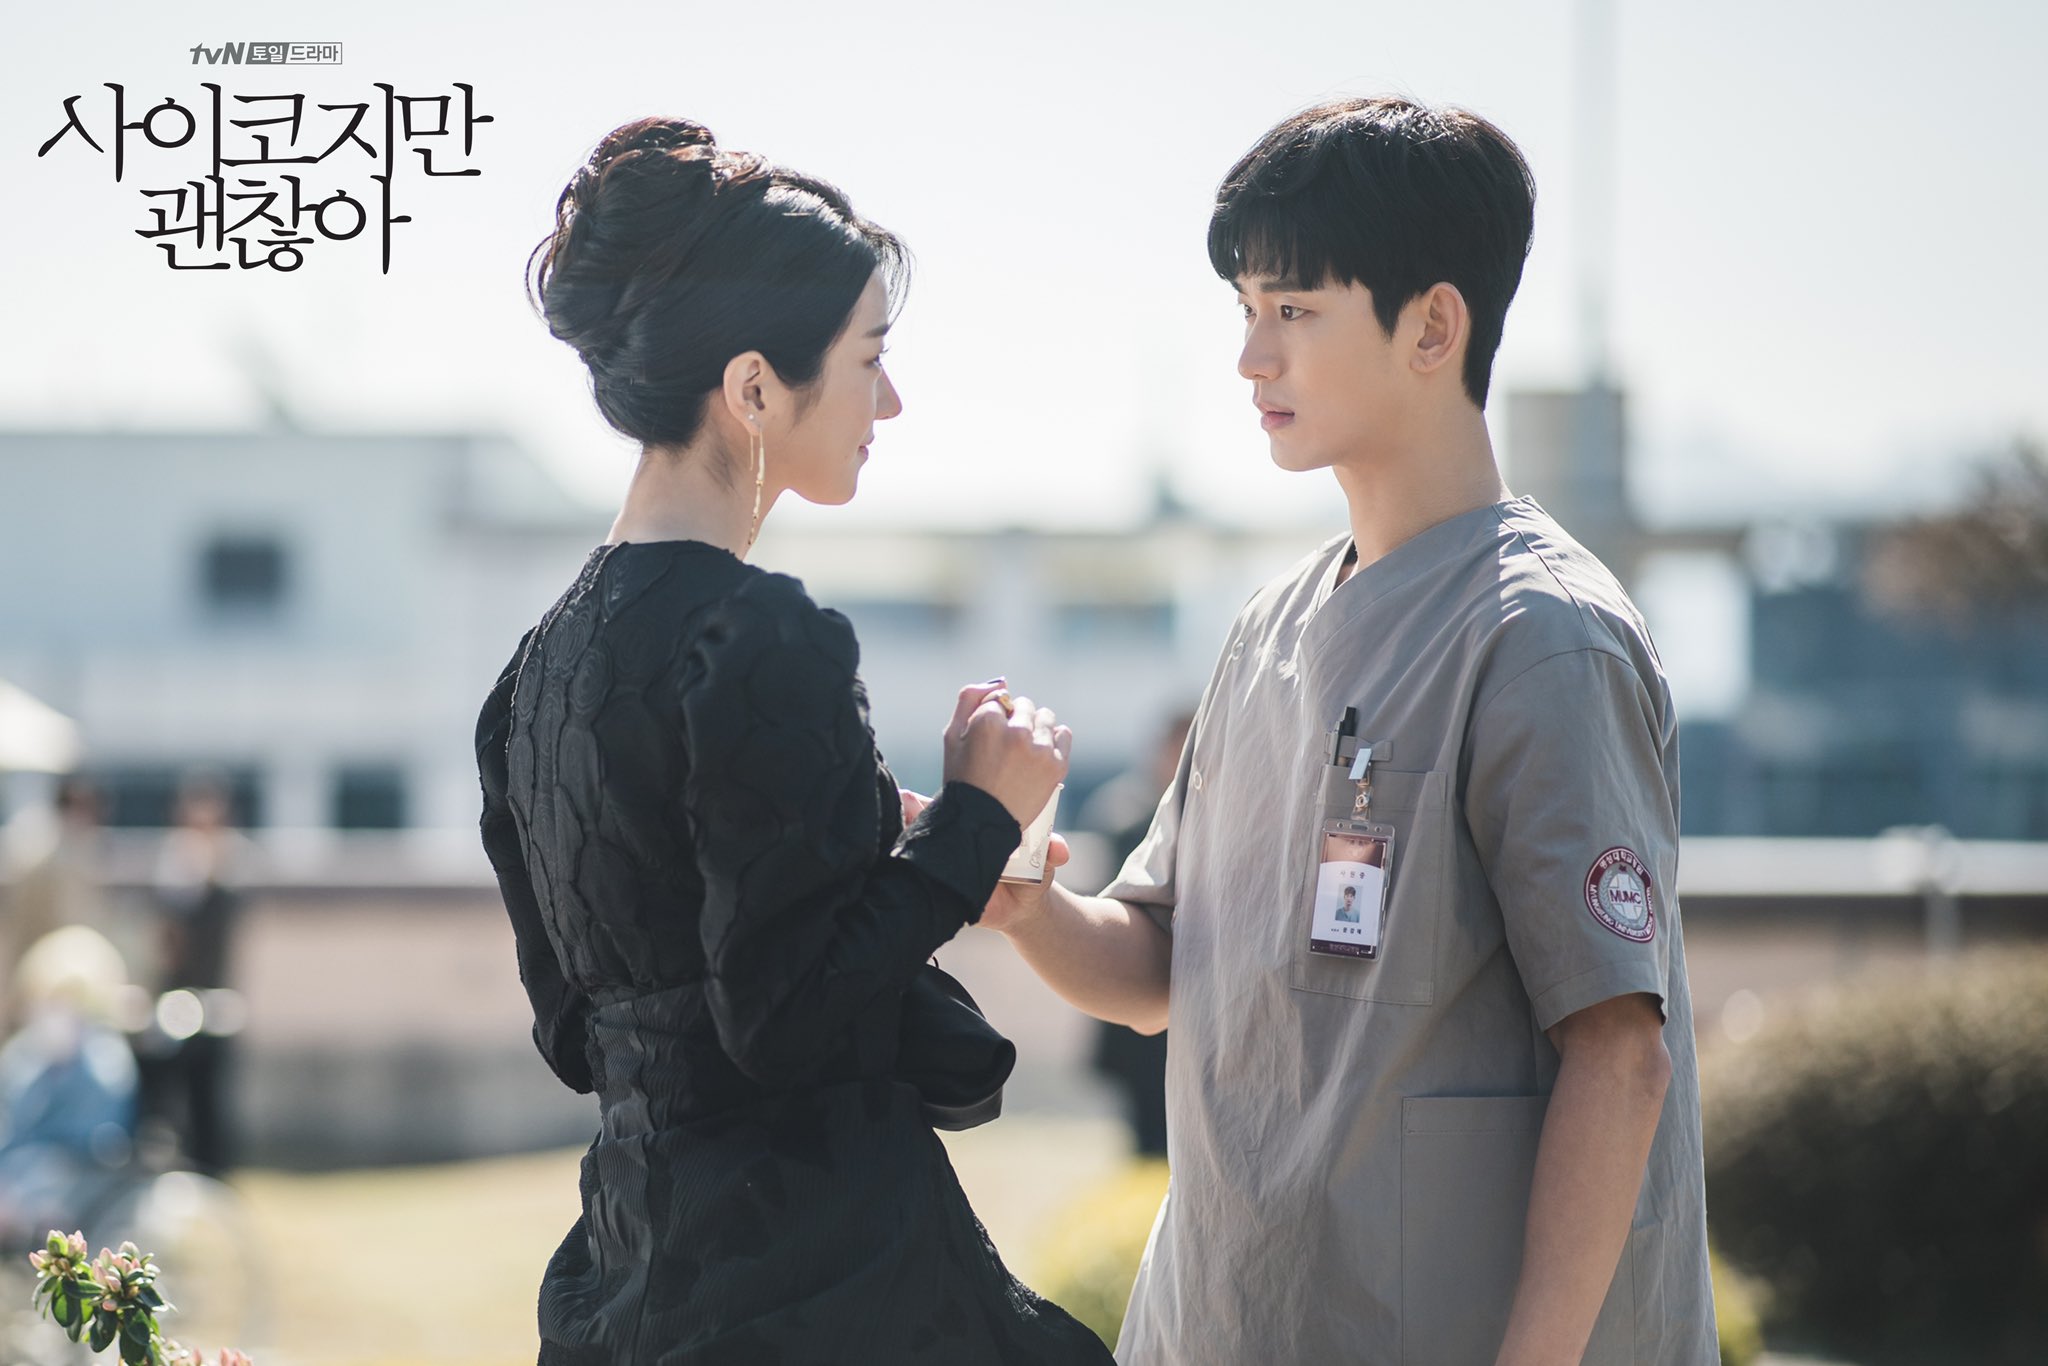 kim-soo-hyun-seo-ye-ji-have-first-encounter-in-upcoming-tvn-drama-it-okay-to-not-be-okay-3